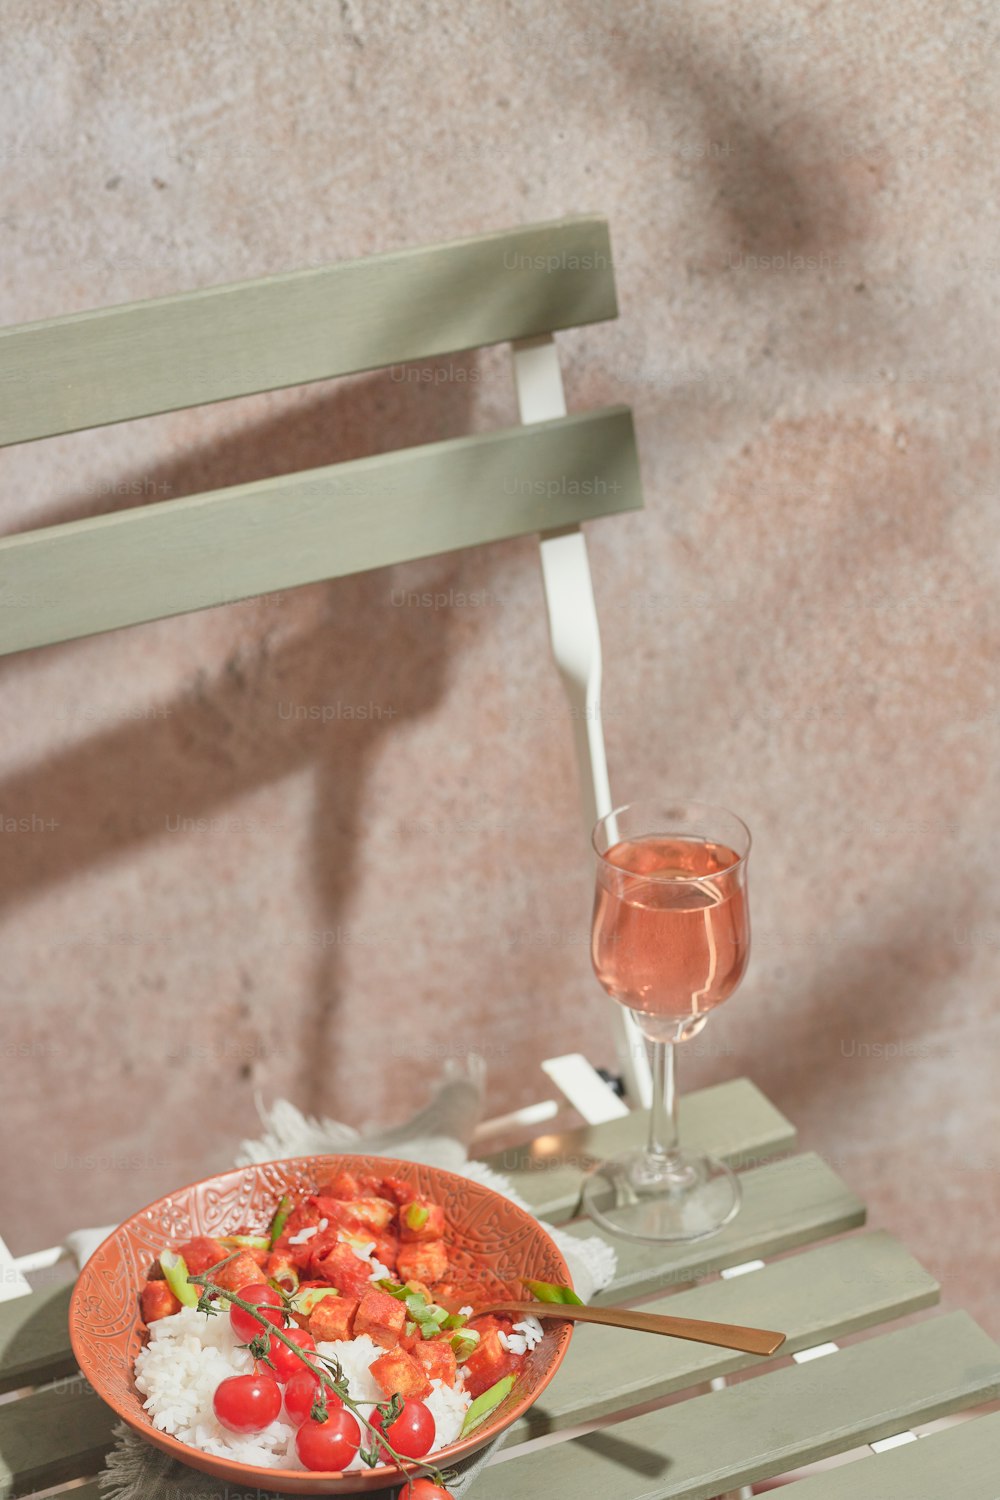 와인 한 잔 옆 테이블에 놓인 음식 한 그릇